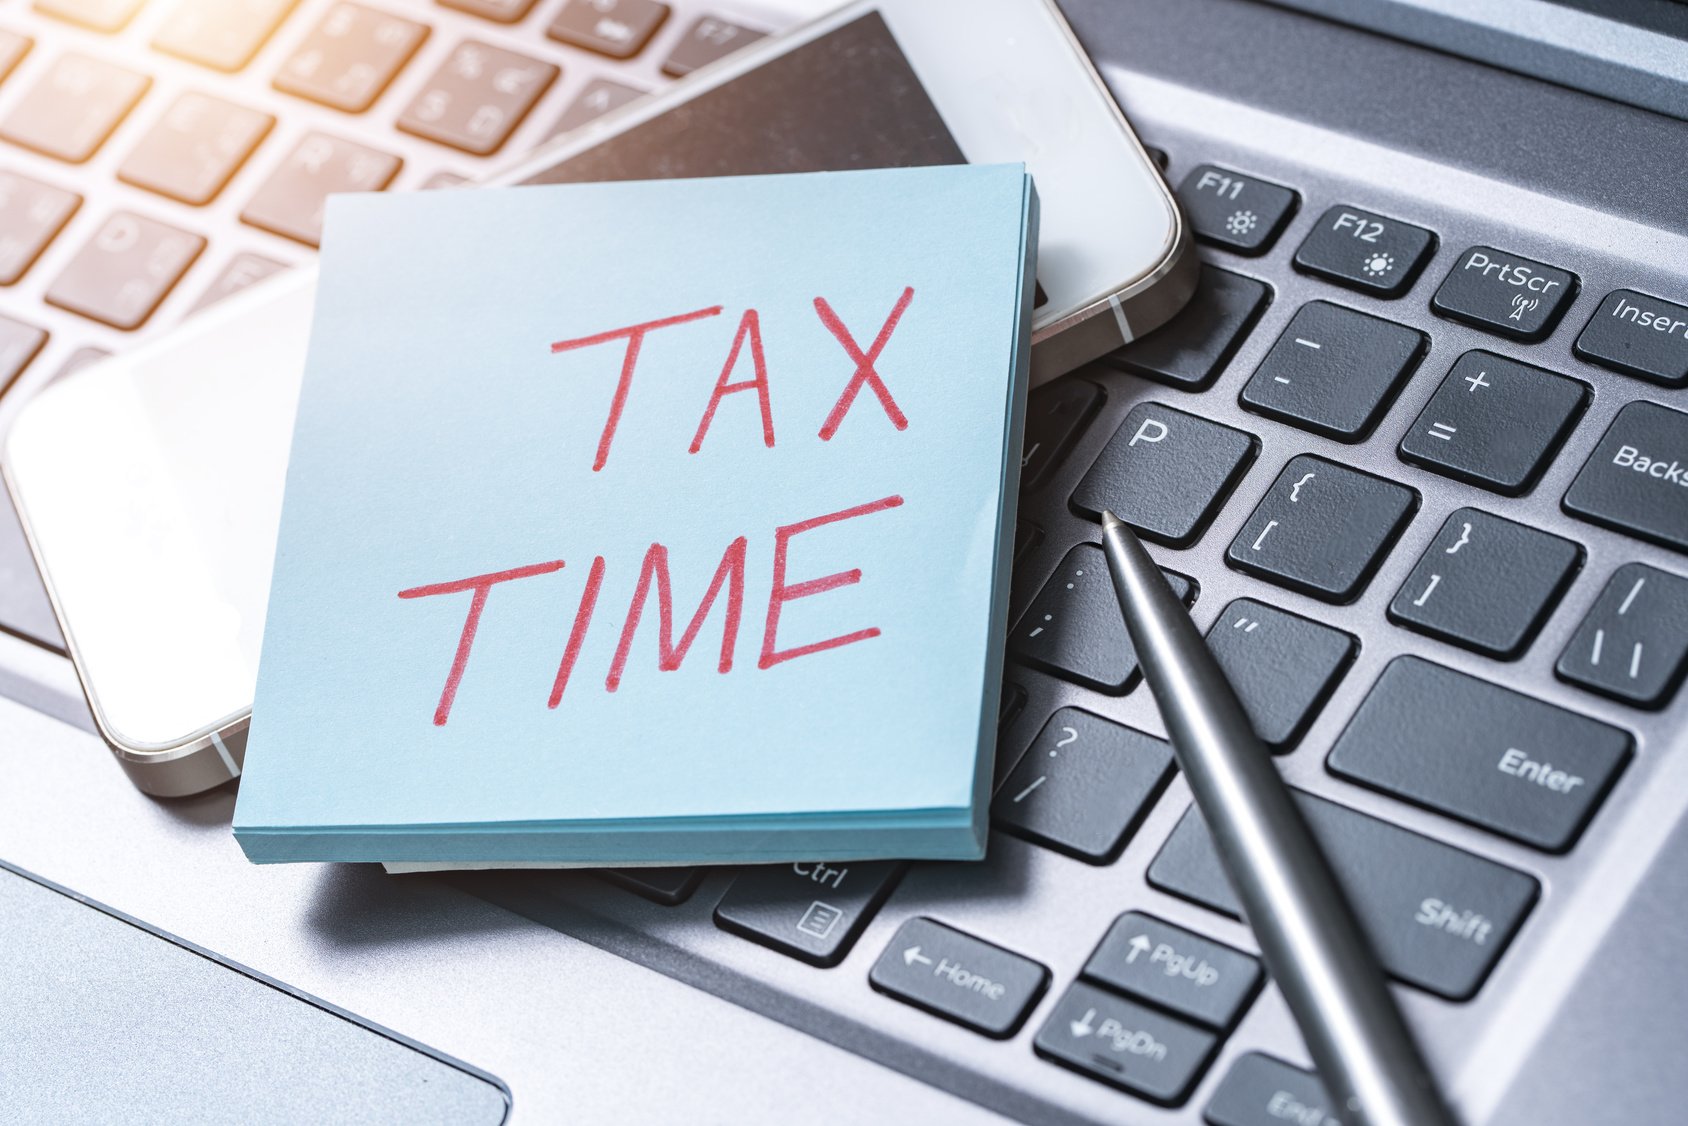 Εντός του Μαρτίου αναμένεται να ανοίξει η ηλεκτρονική πύλη του TAXISnet για την υποβολή των φετινών φορολογικών δηλώσεων.